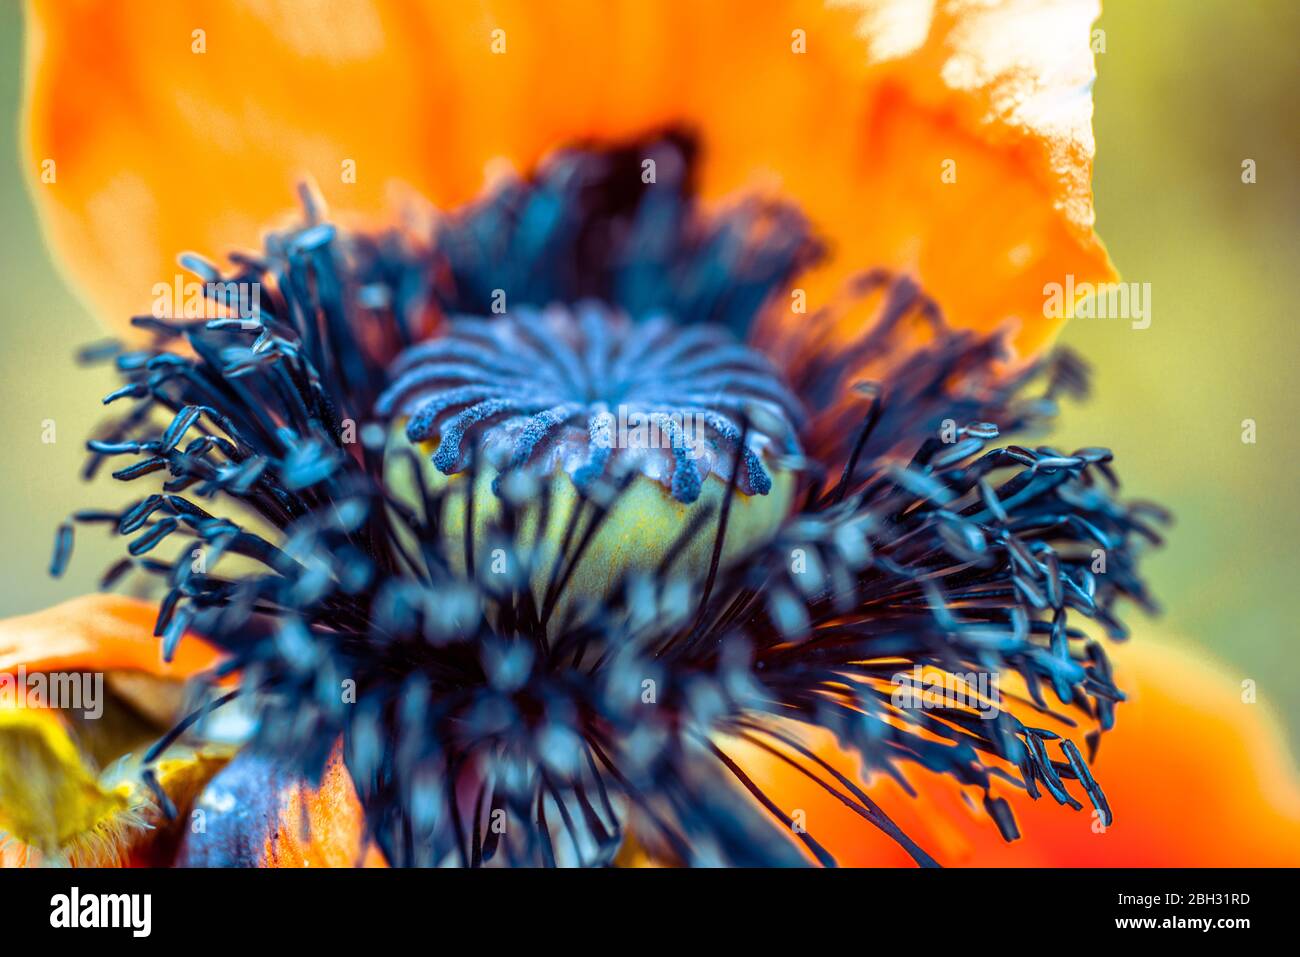 hermosa flor de amapola de diferentes colores en modo macro Foto de stock